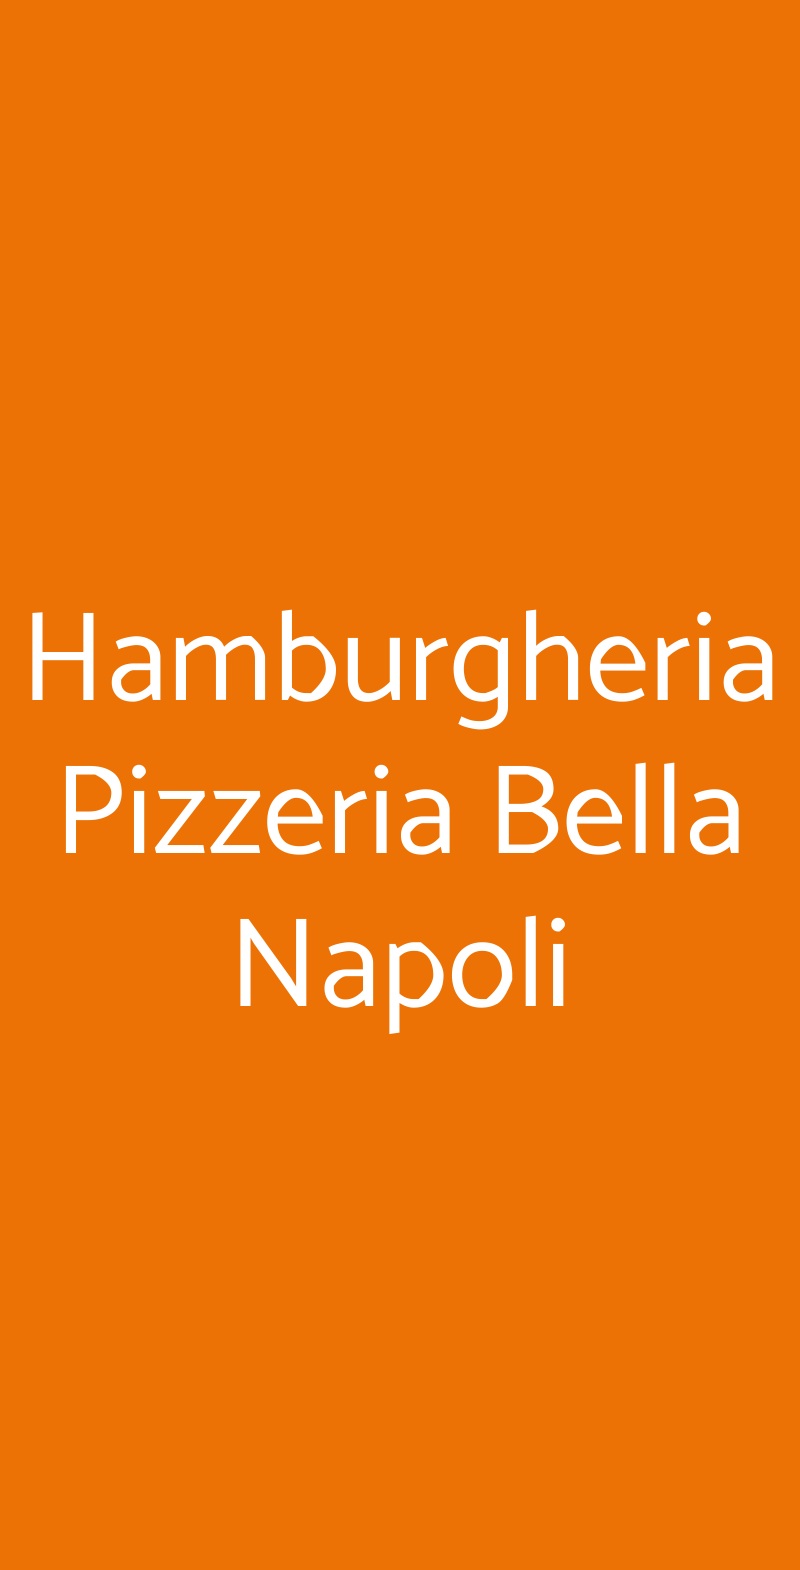 Hamburgheria Pizzeria Bella Napoli Torino menù 1 pagina